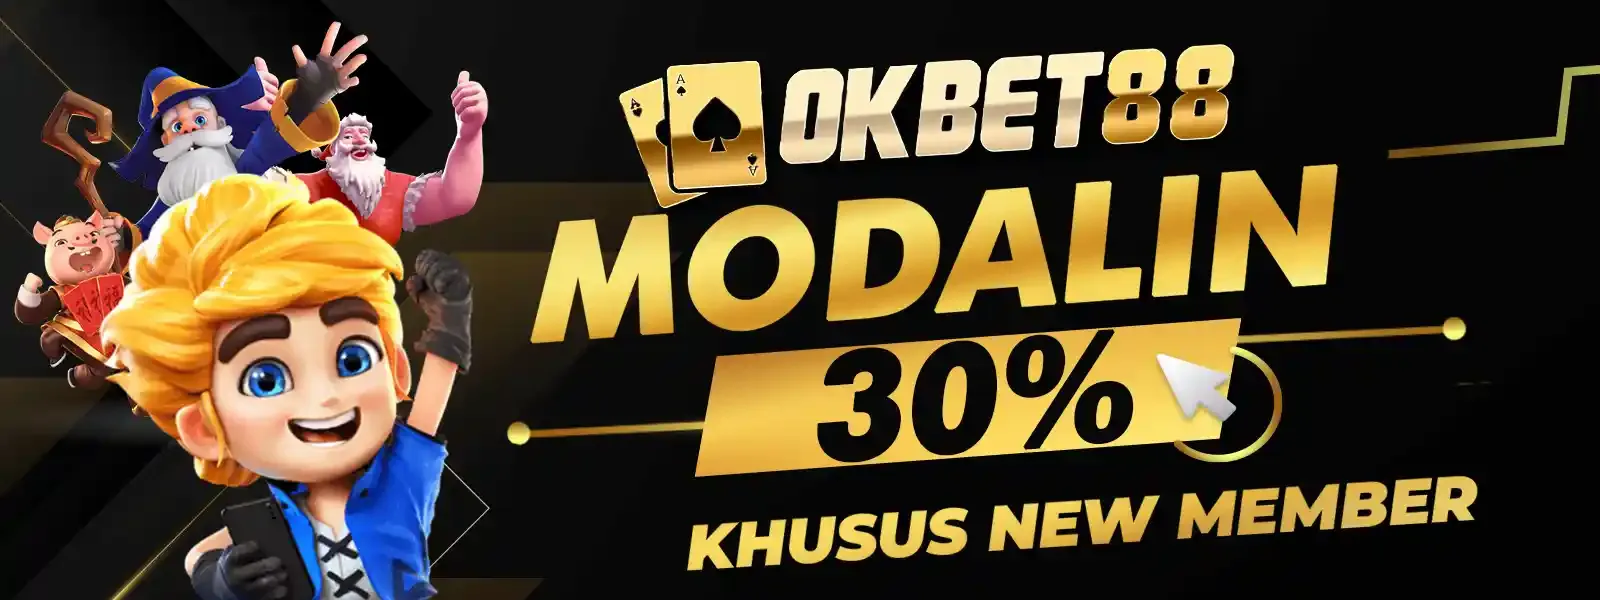 OKBET88 MODALIN  30%